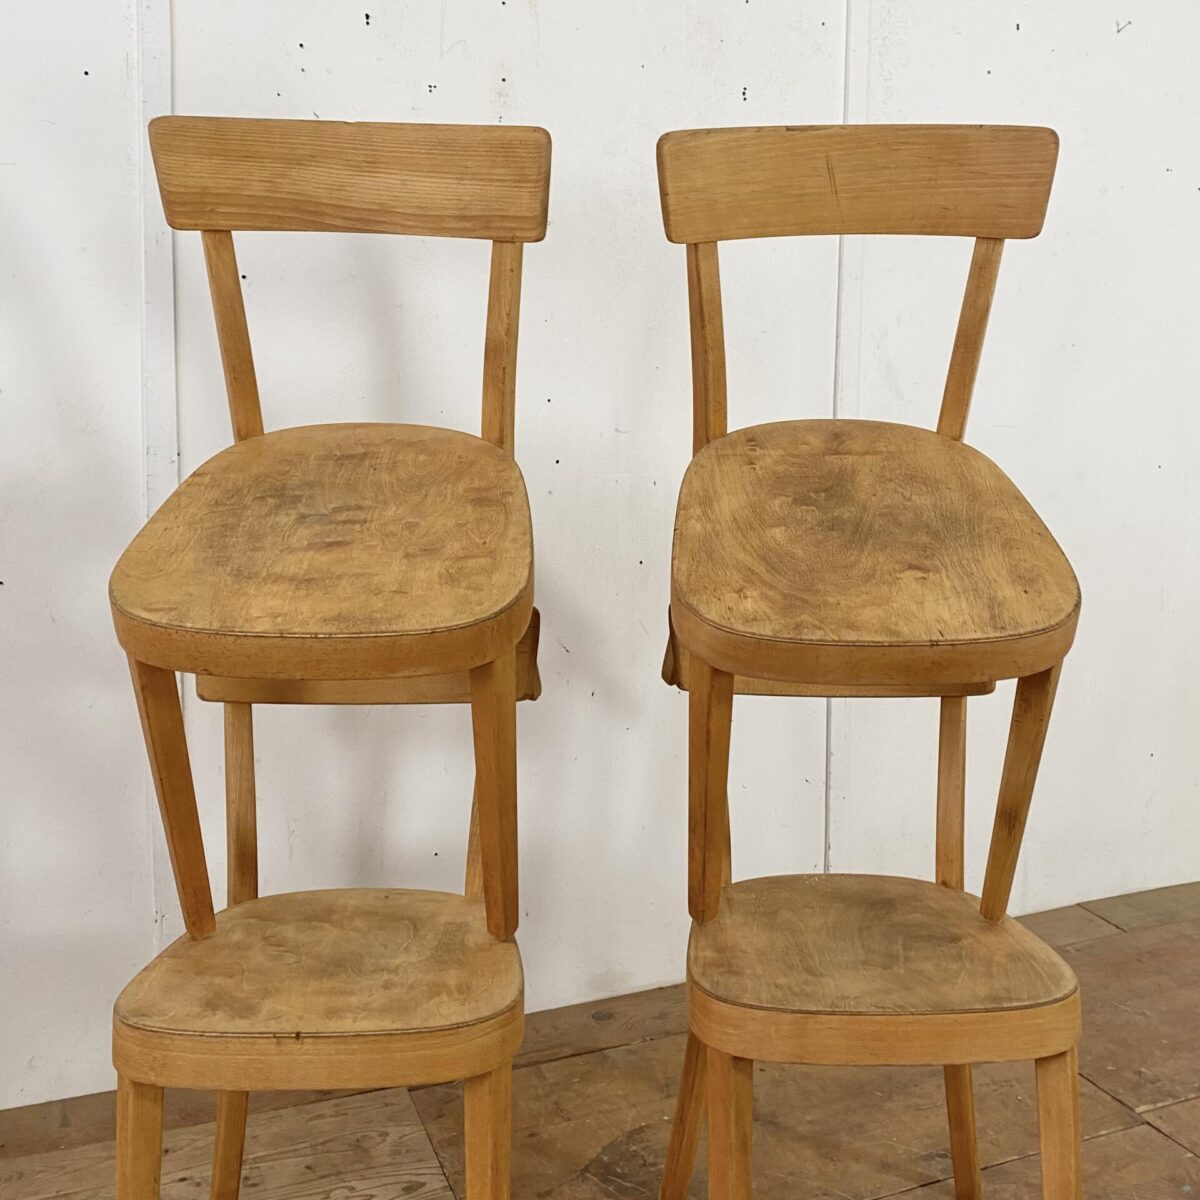 4er Set Horgenglarus Classic. 1962 Die Stühle sind in stabilem restaurierten Zustand, die Holz Oberflächen sind geschliffen geölt. 